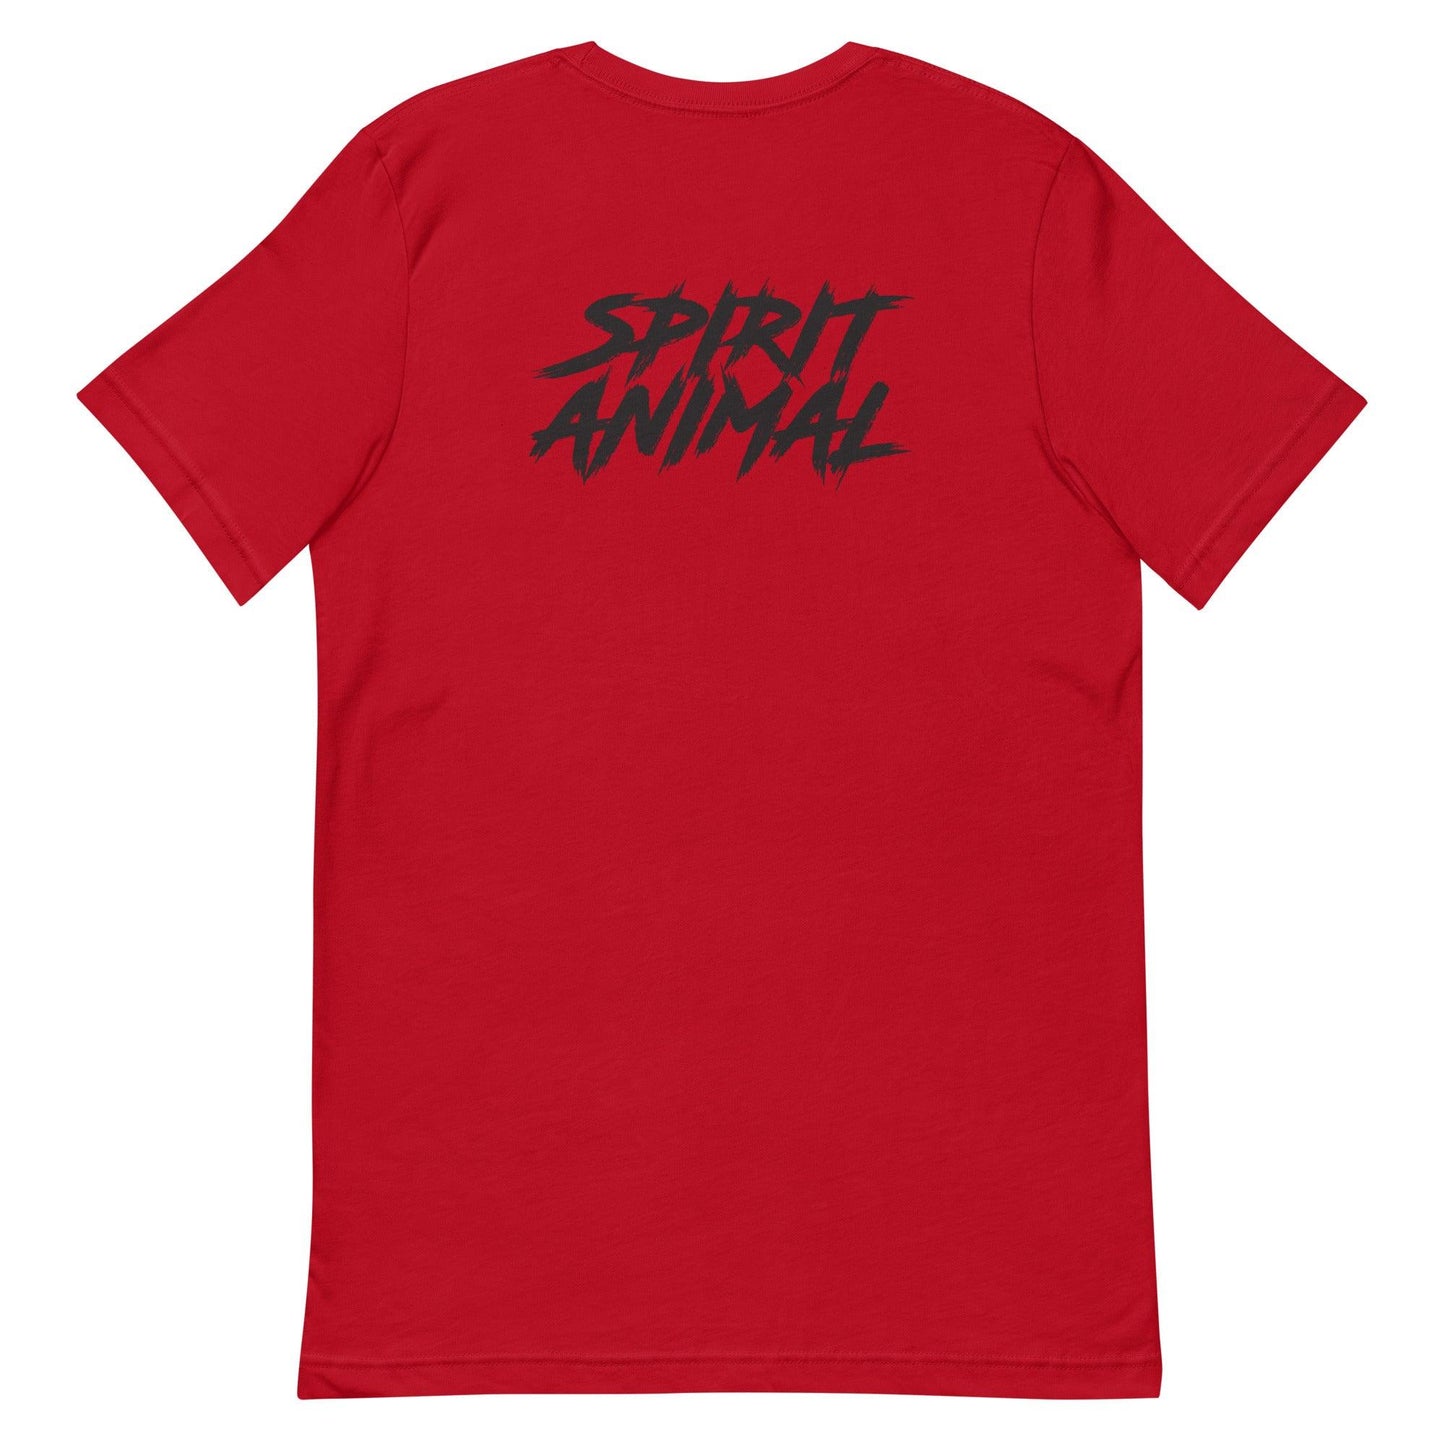 Scooby Wright III "III" T-Shirt - Fan Arch